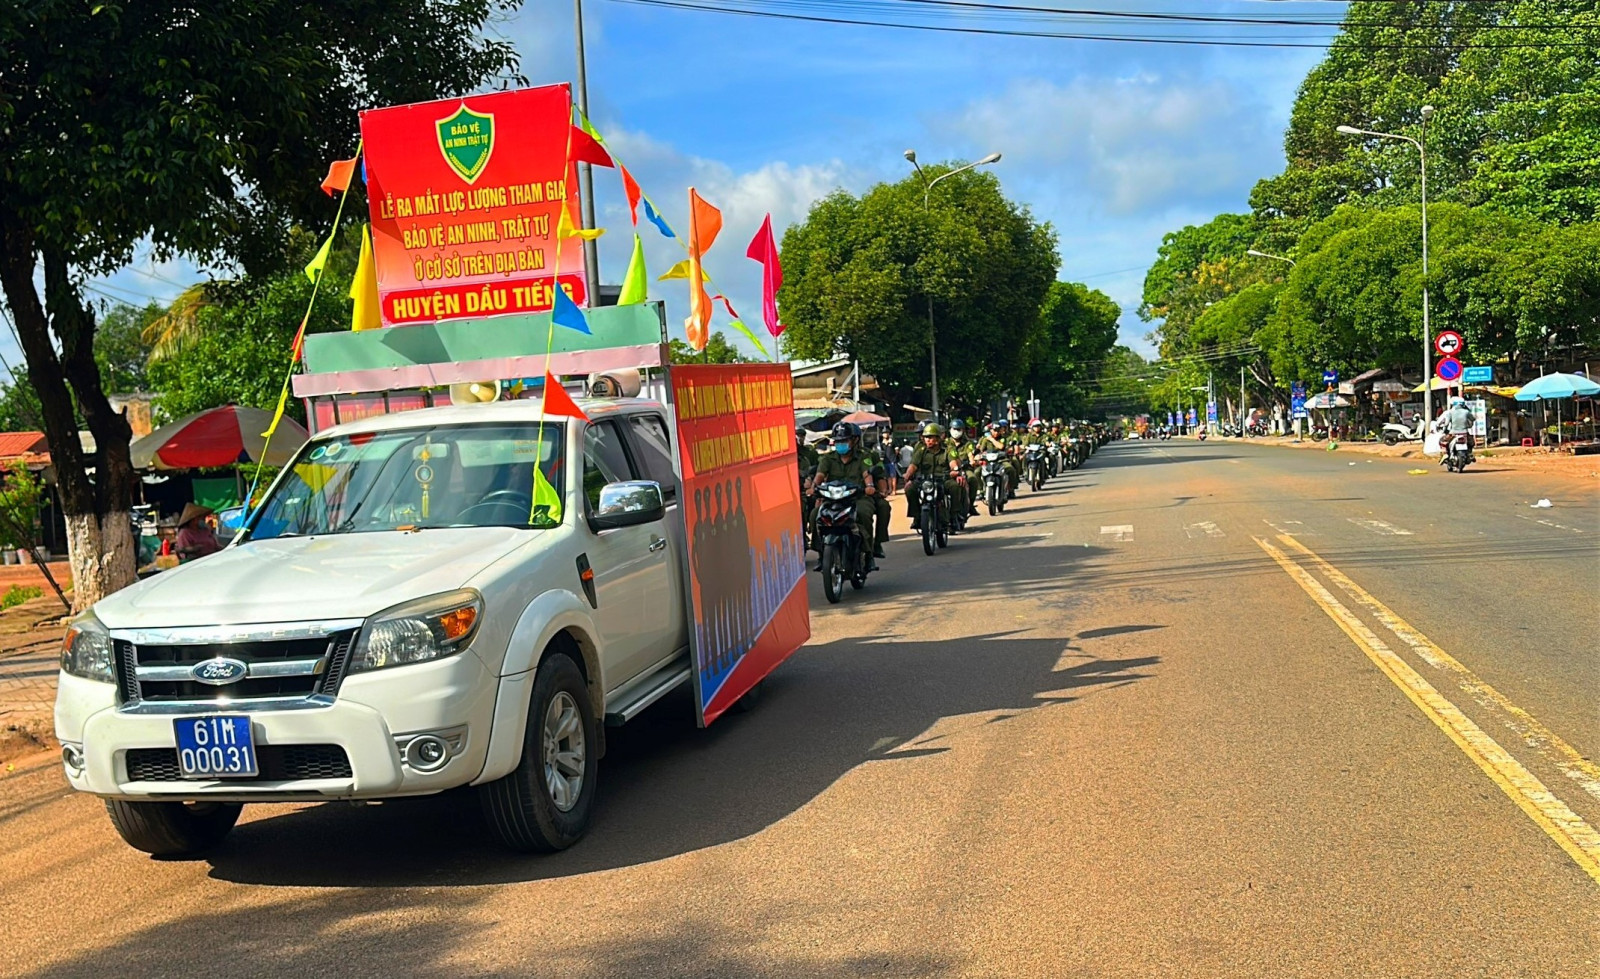 Lực lượng tham gia bảo vệ ANTT ở cơ sở huyện Dầu Tiếng diễu hành qua các tuyến đường trọng điểm trên địa bàn.